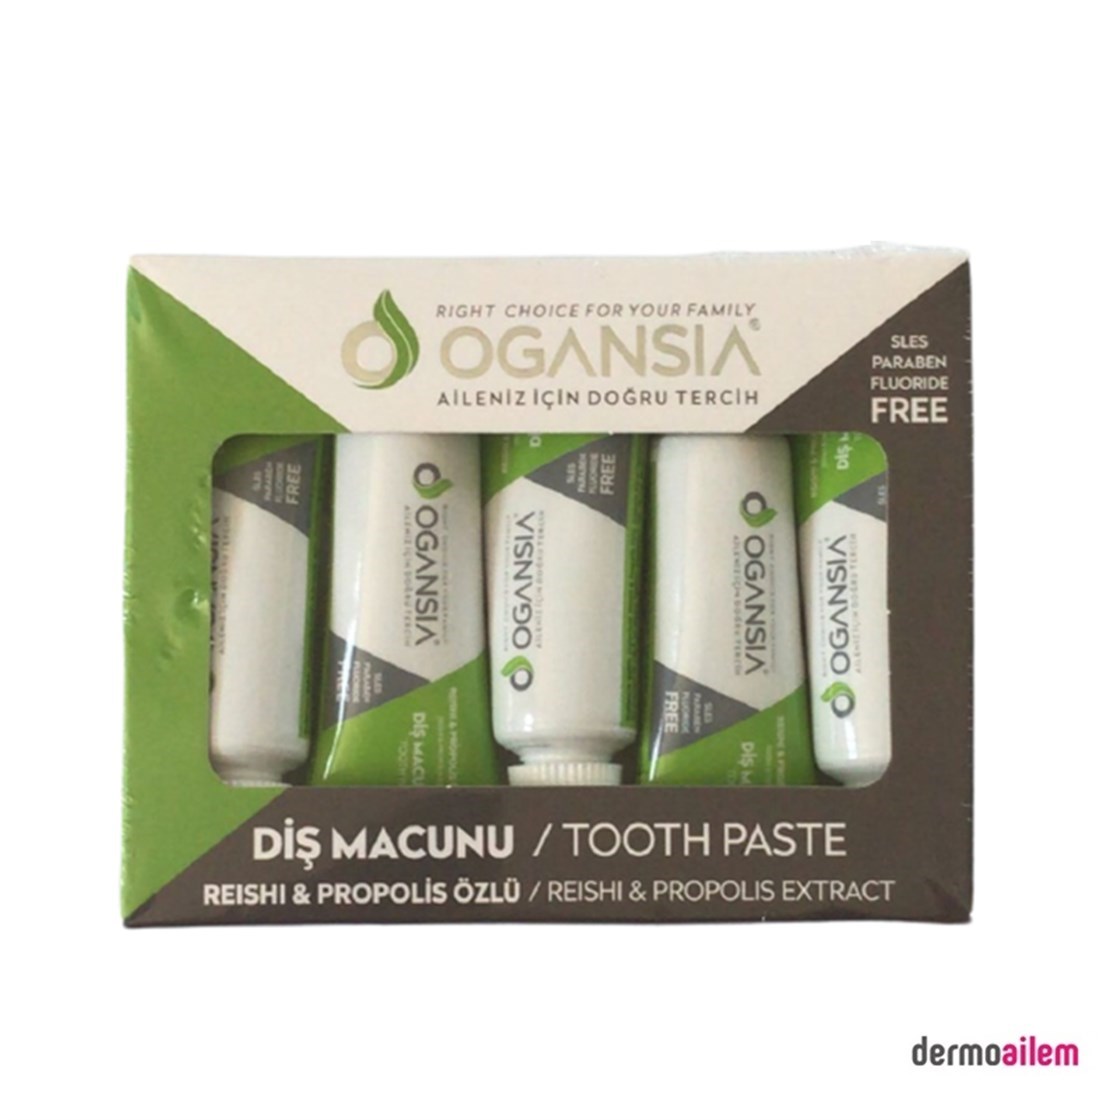 Ogansia Propolis ve Çay Ağacı Özlü Diş Macunu Küçük Boy 15 ml x 5 Ad.  Fiyatları İndirimli | Dermoailem.com